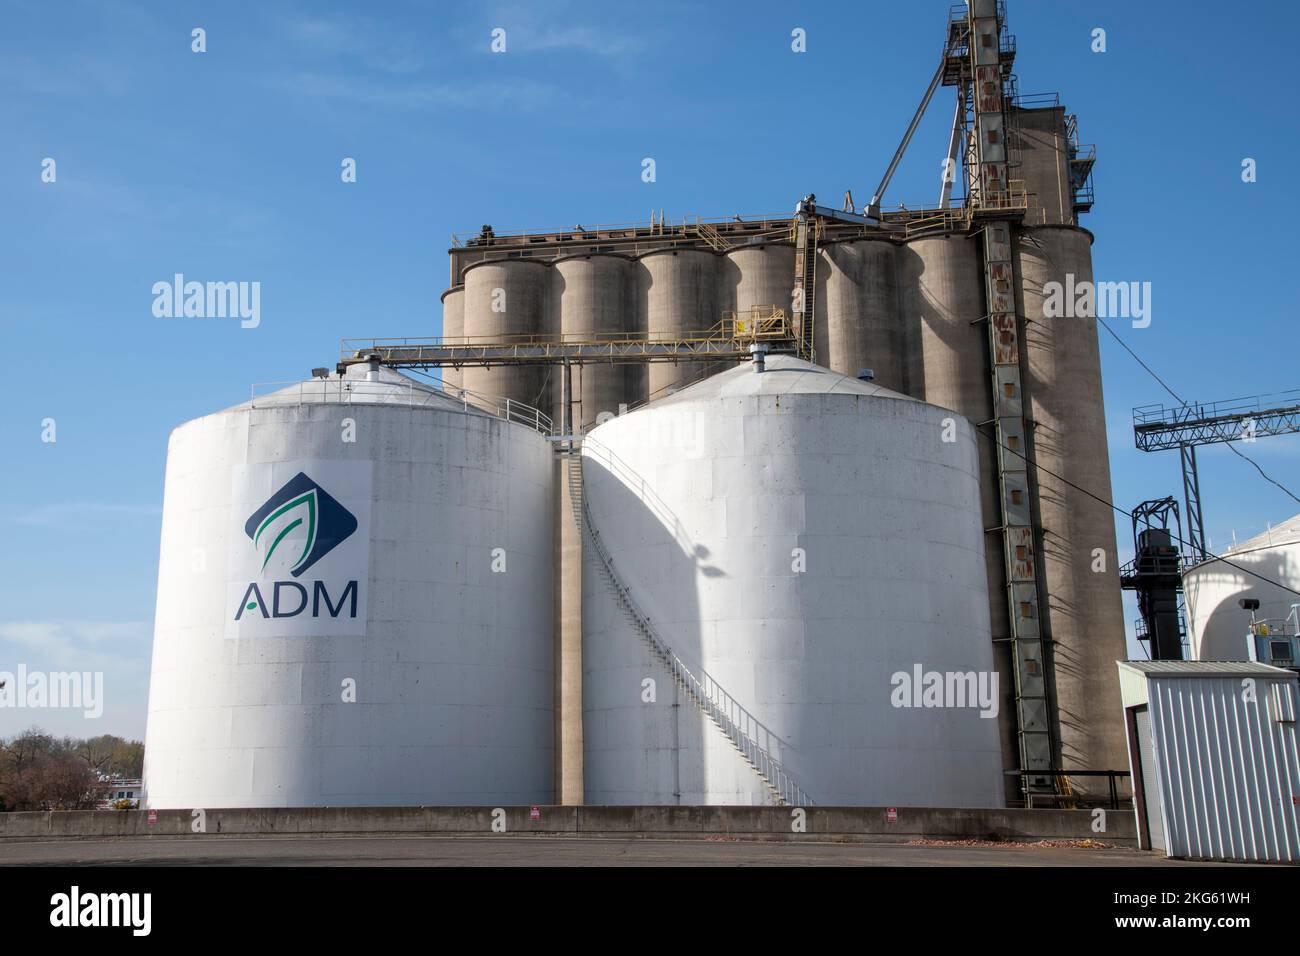 Roter Flügel, Minnesota. Das Logo von ADM auf der Seite einer Abfalltonne ist ein führender Anbieter im Bereich der globalen Ernährung. Stockfoto